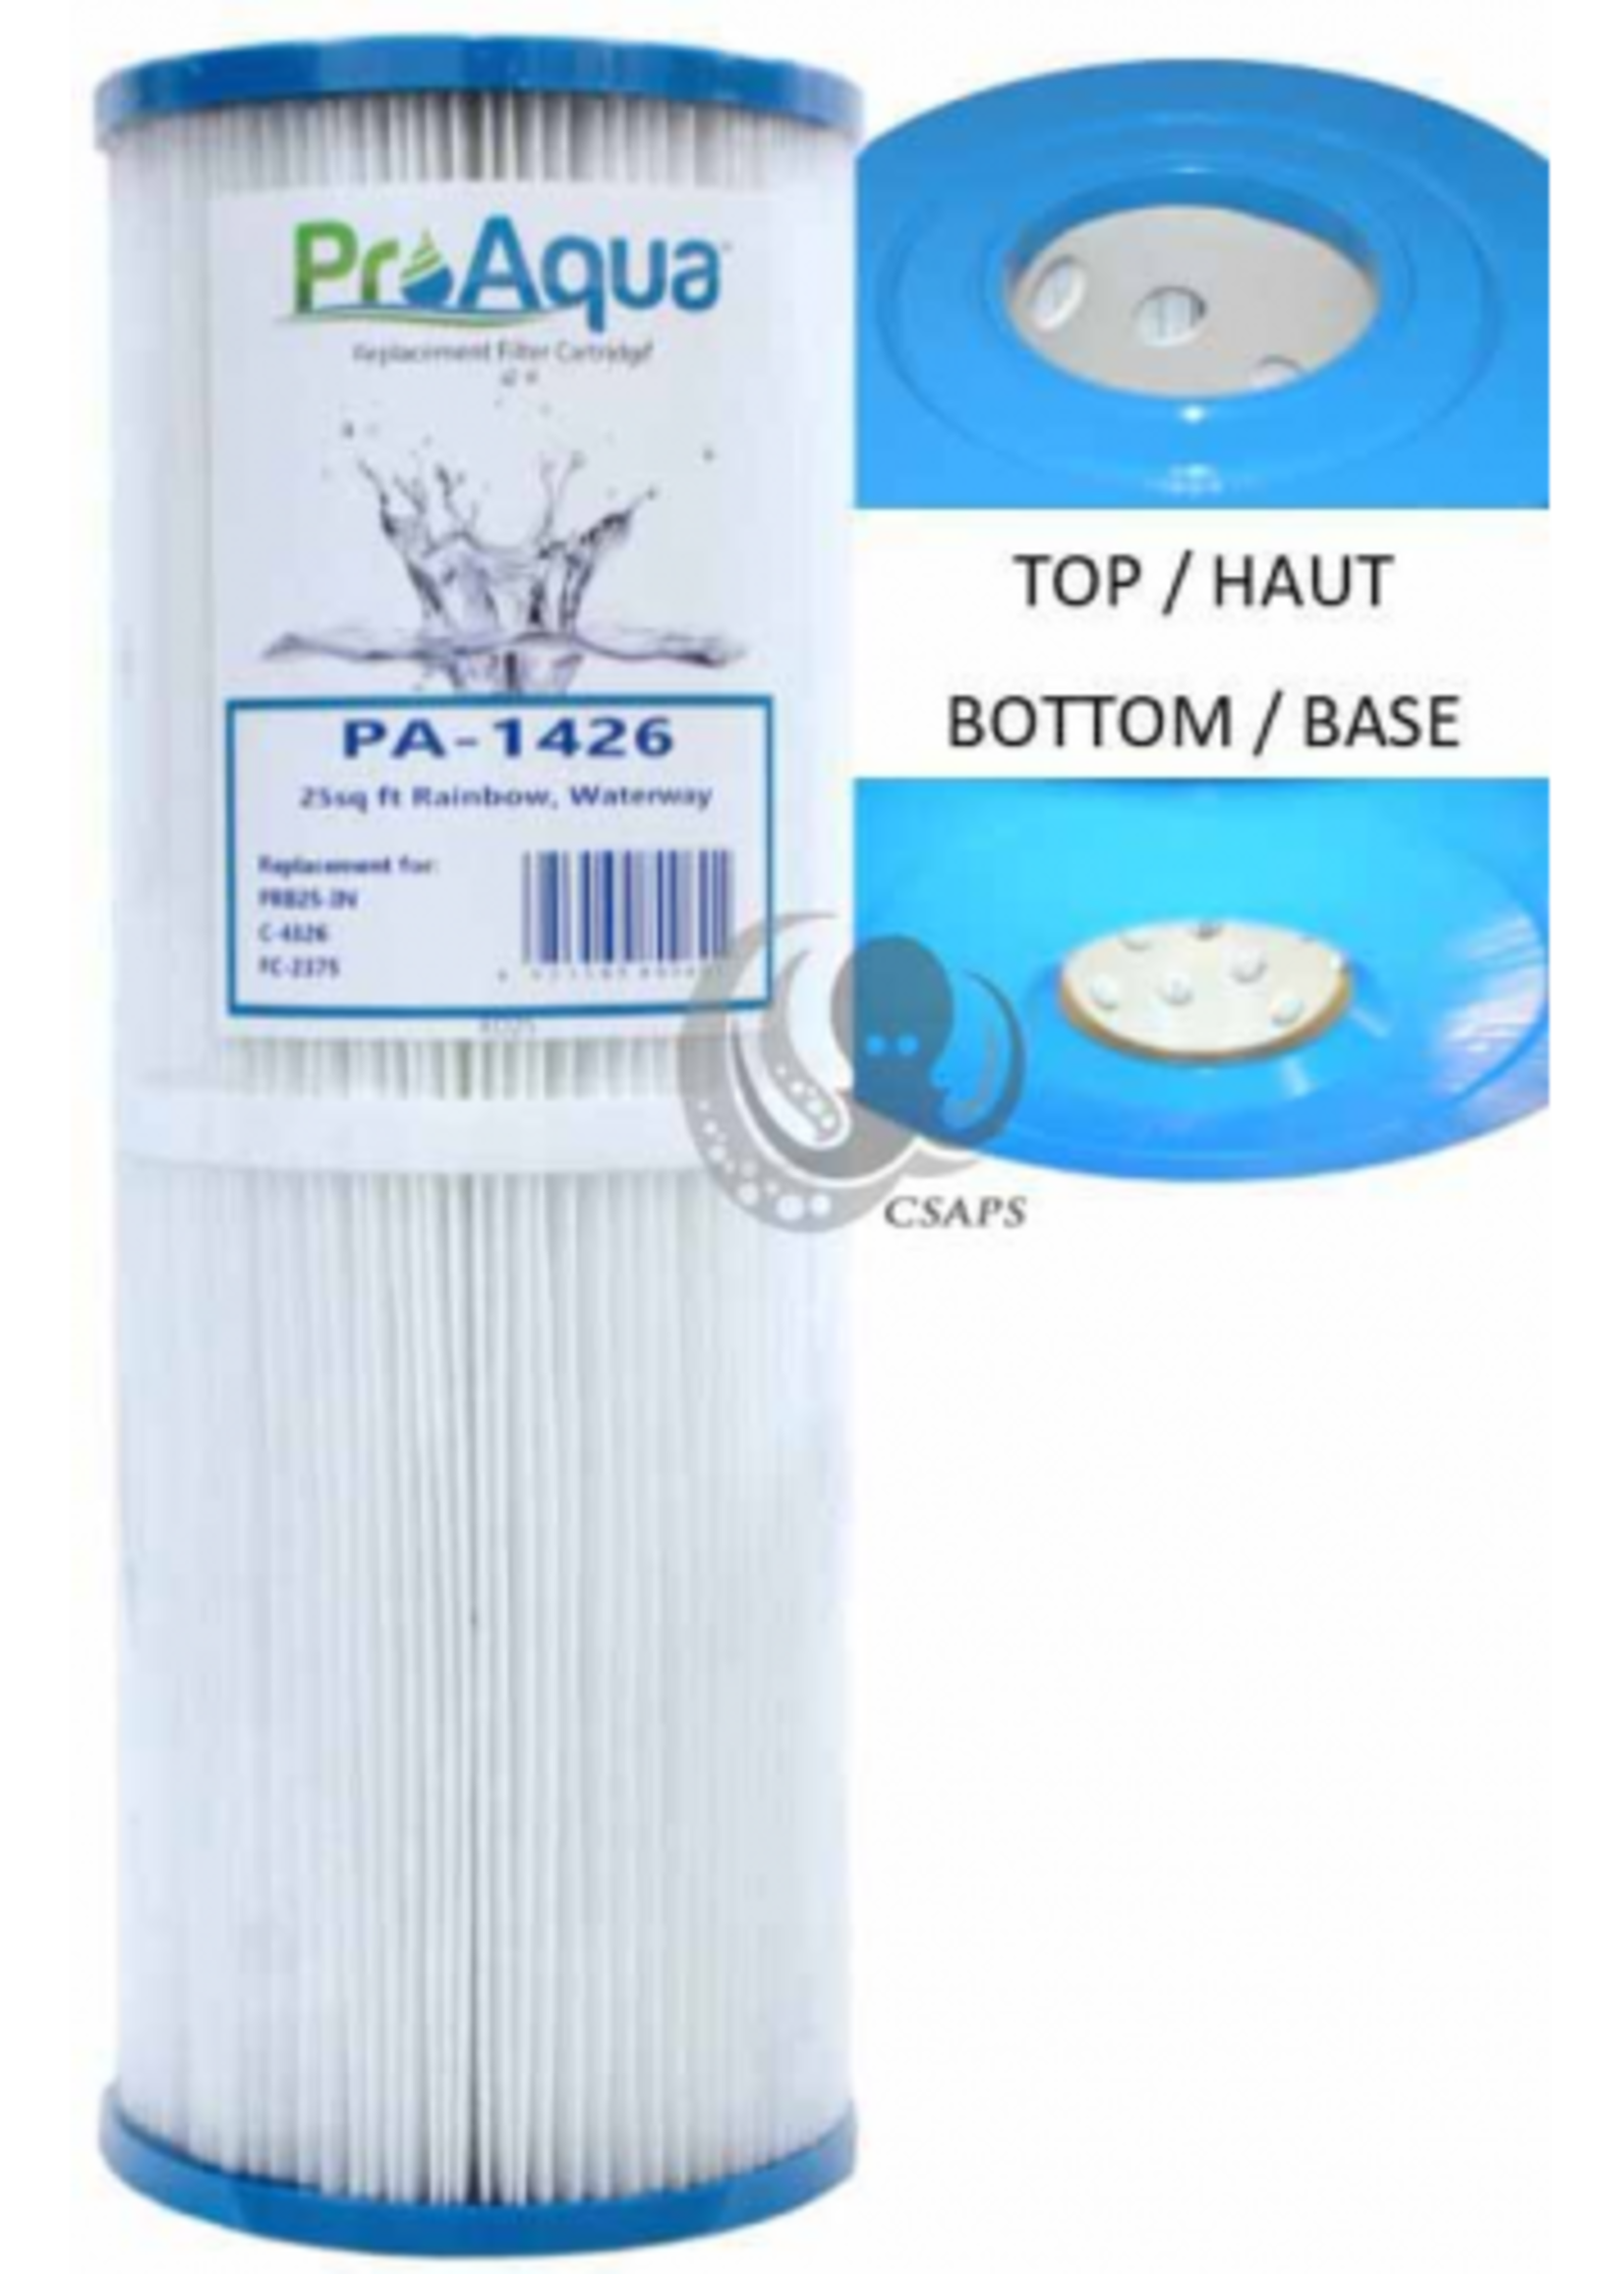 Pro Aqua Pro Aqua Filter Cartridge PA-1426